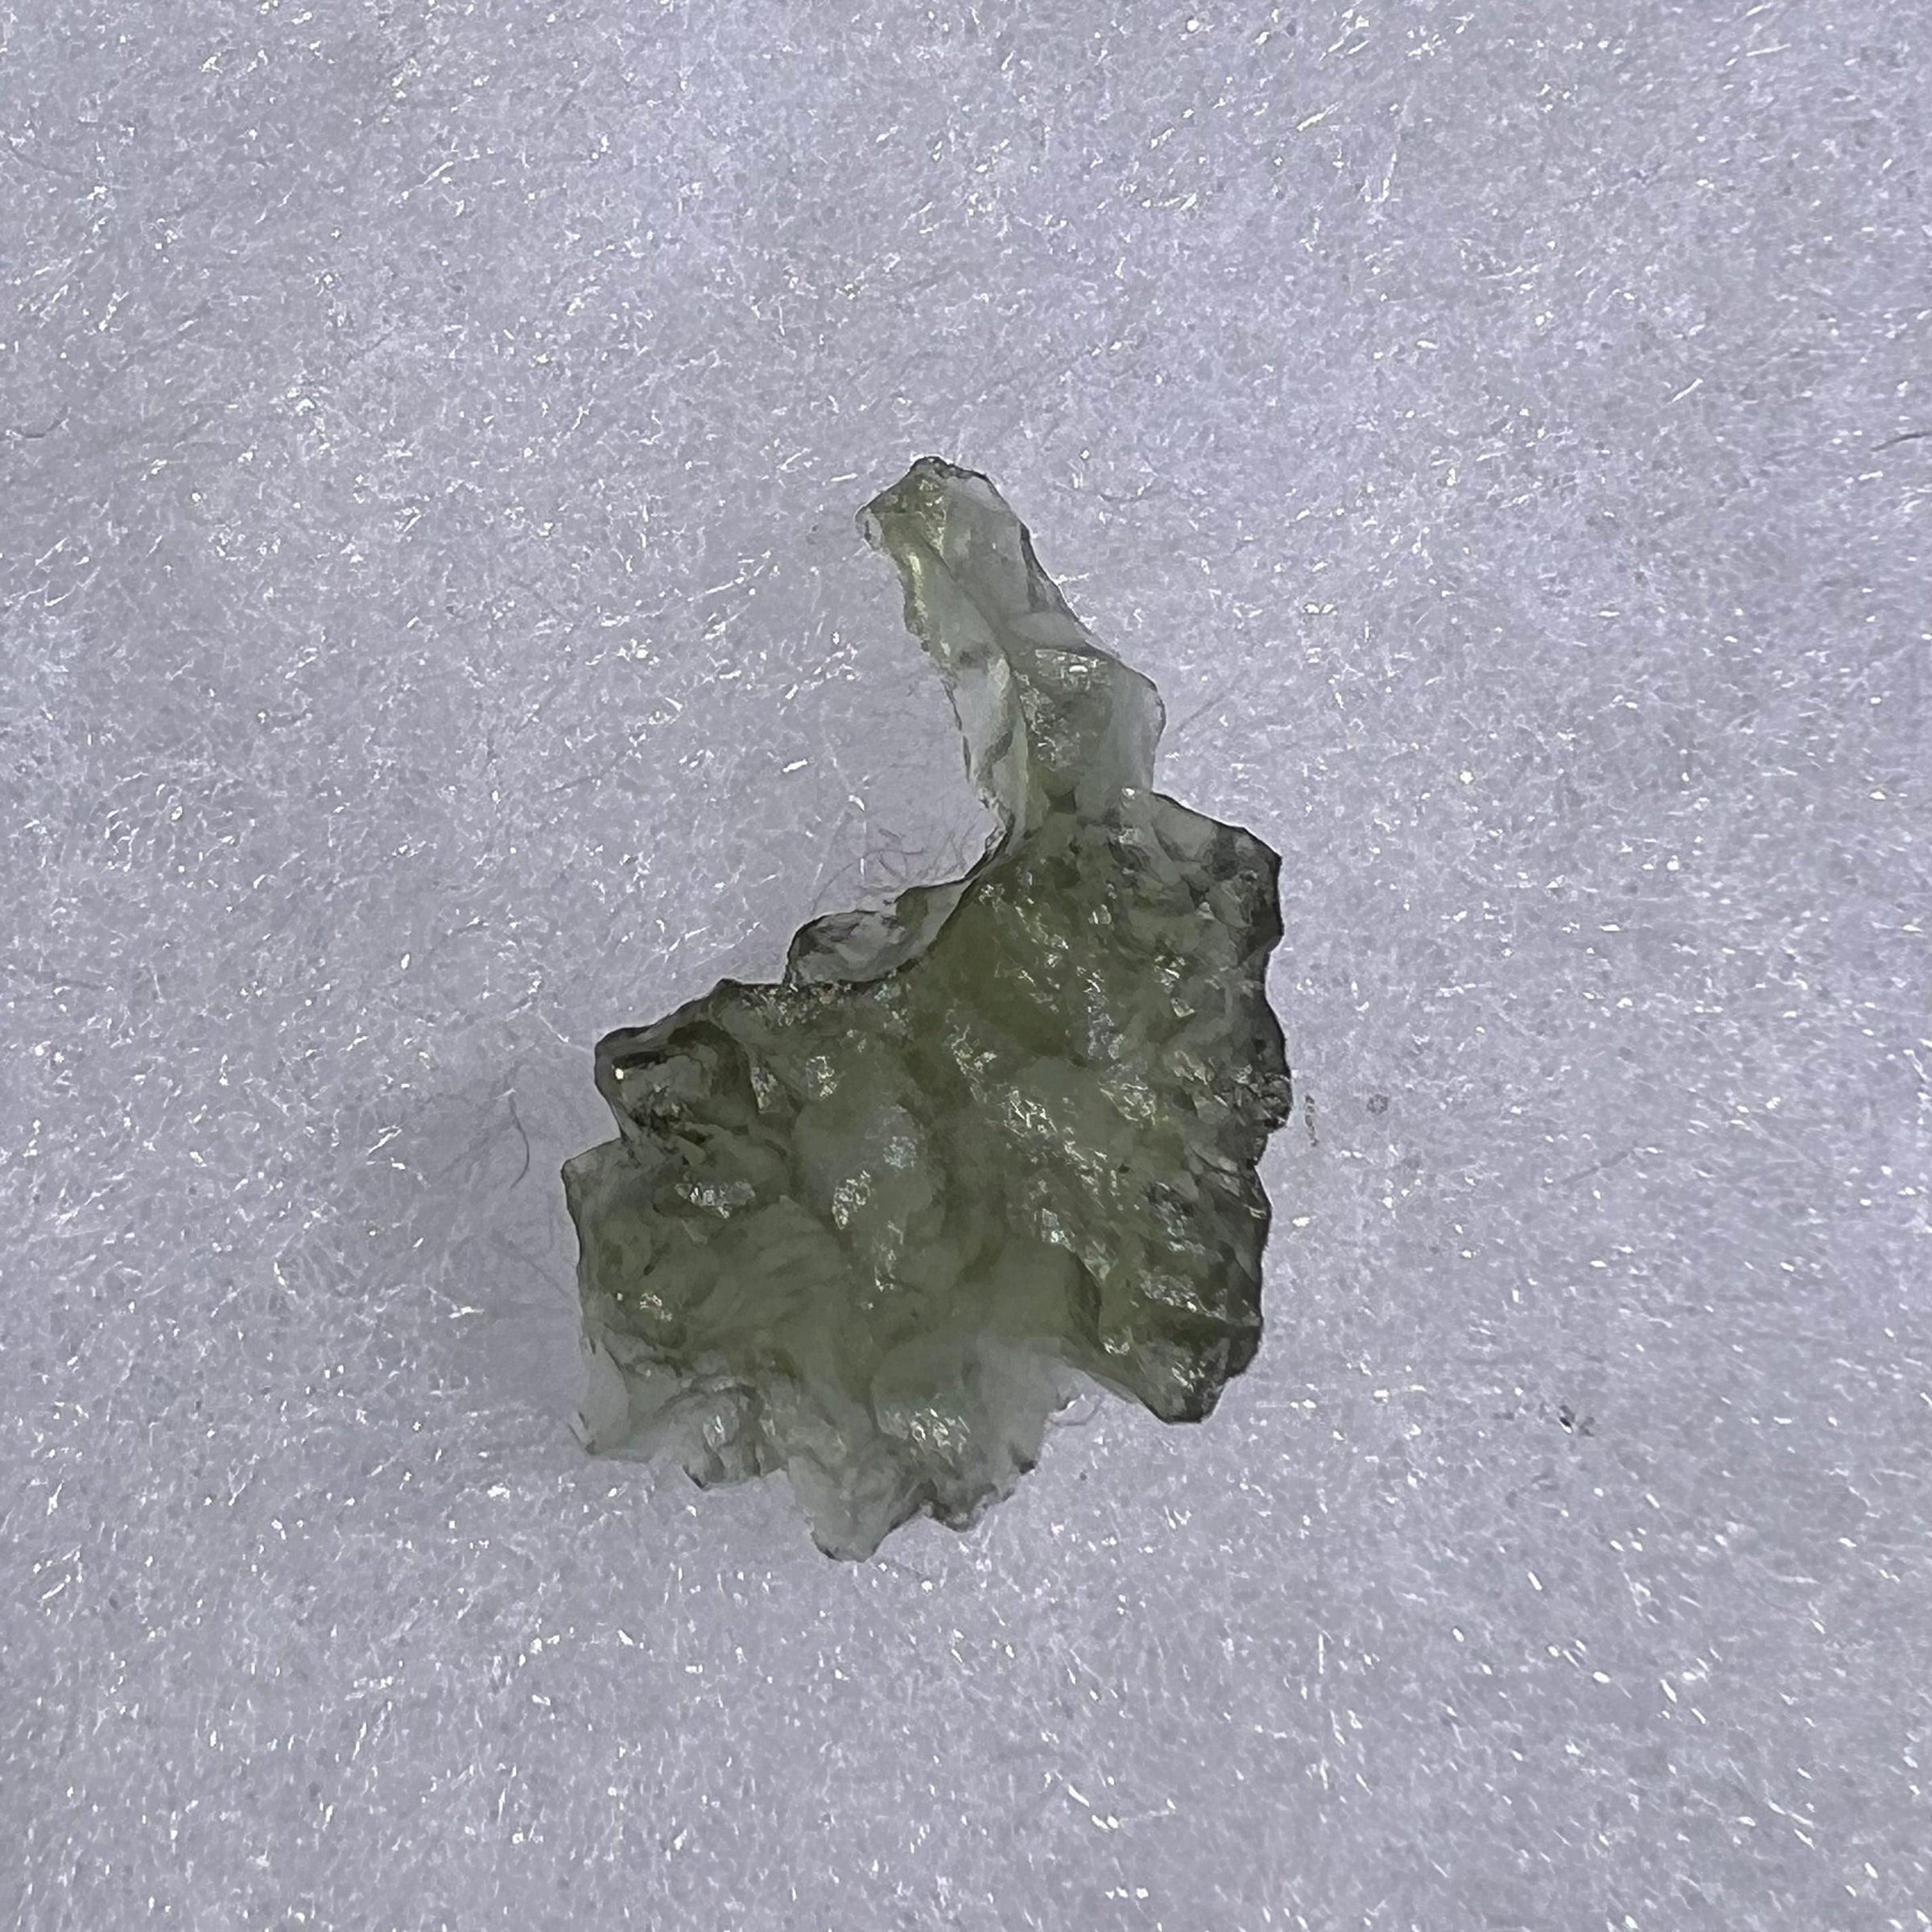 Besednice Moldavite 0.4 grams #383-Moldavite Life